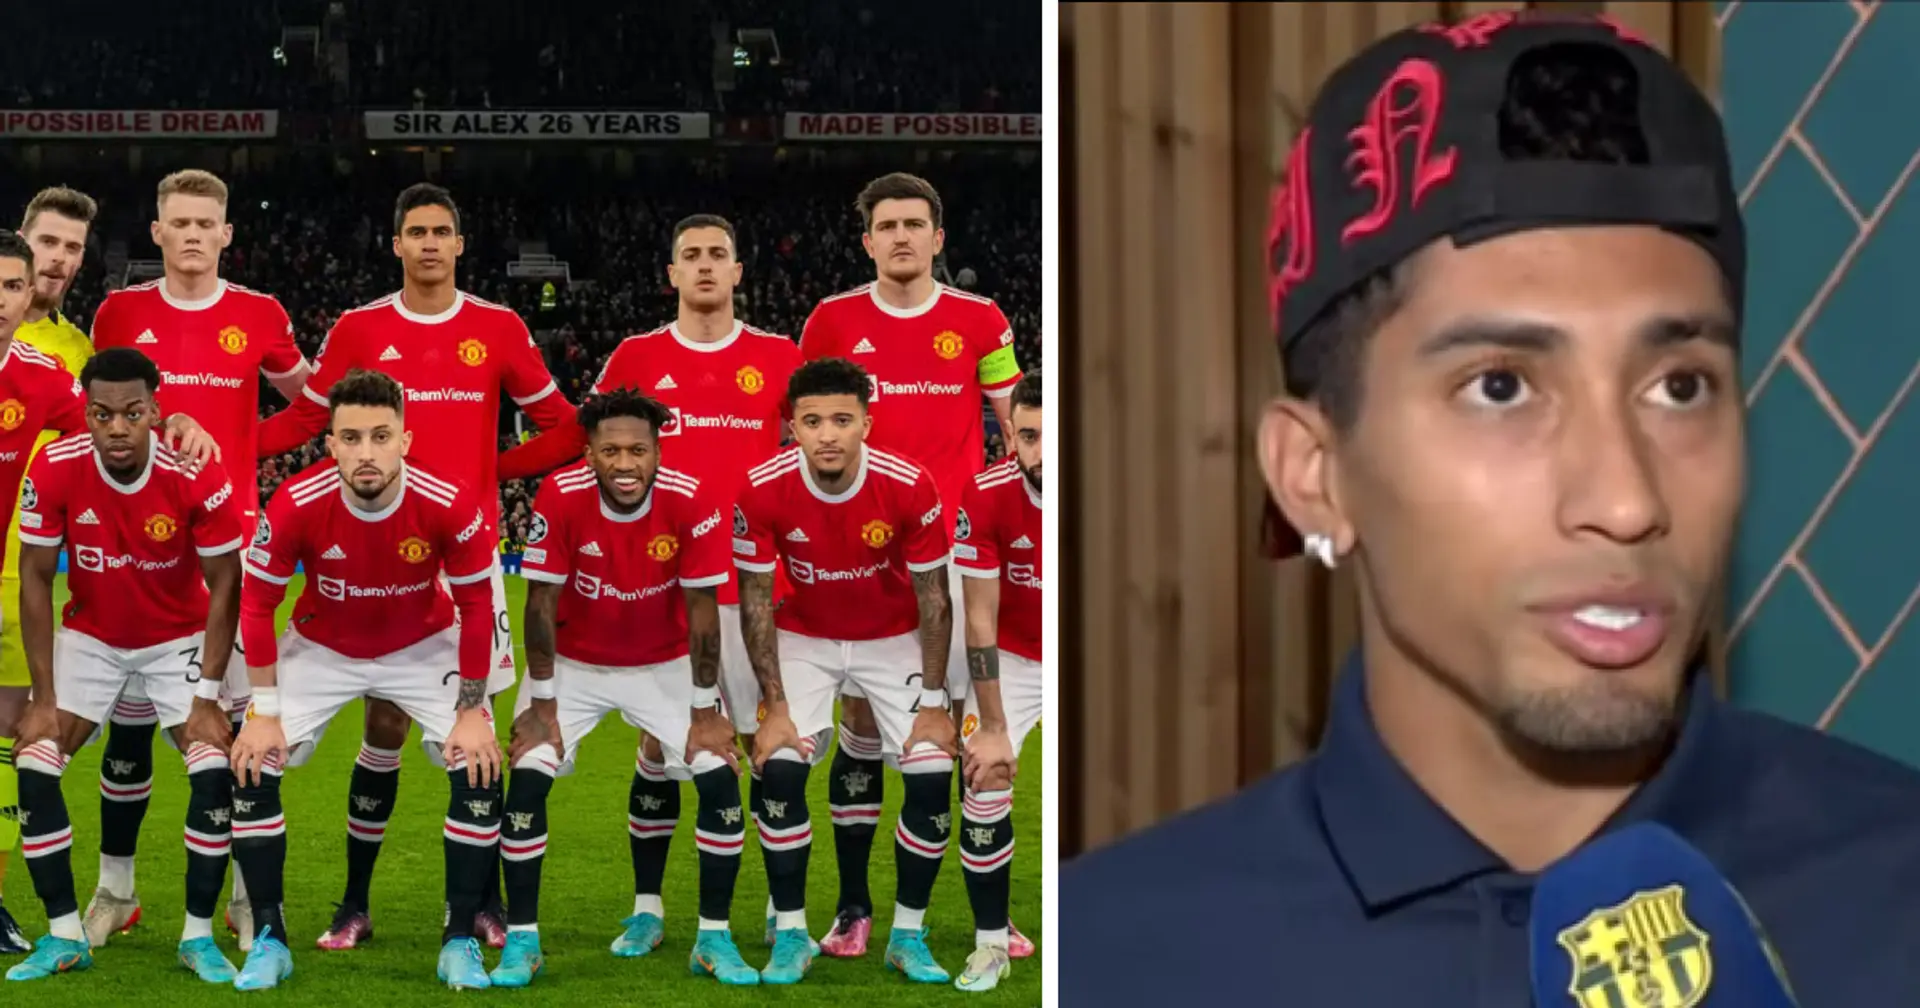 "Le gars est tellement intelligent": Raphinha dit qu'il a un frère aîné qui joue pour Manchester United